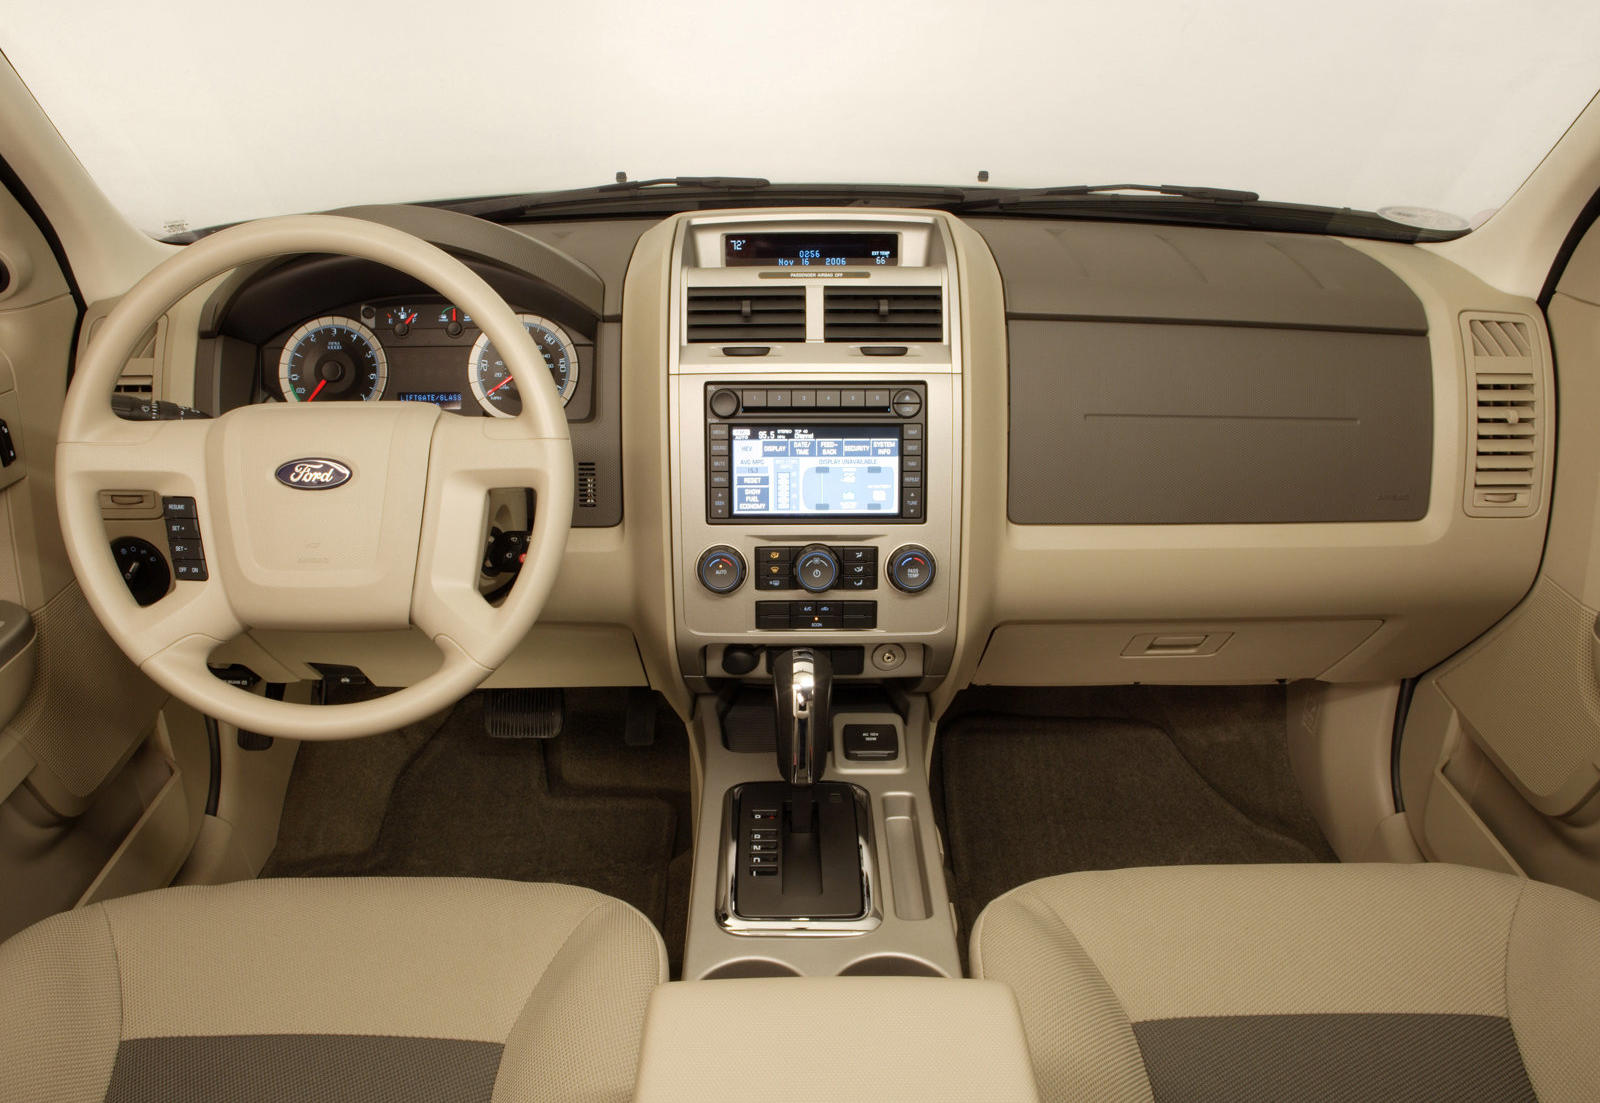 2012 Ford Escape Hybrid Dashboard